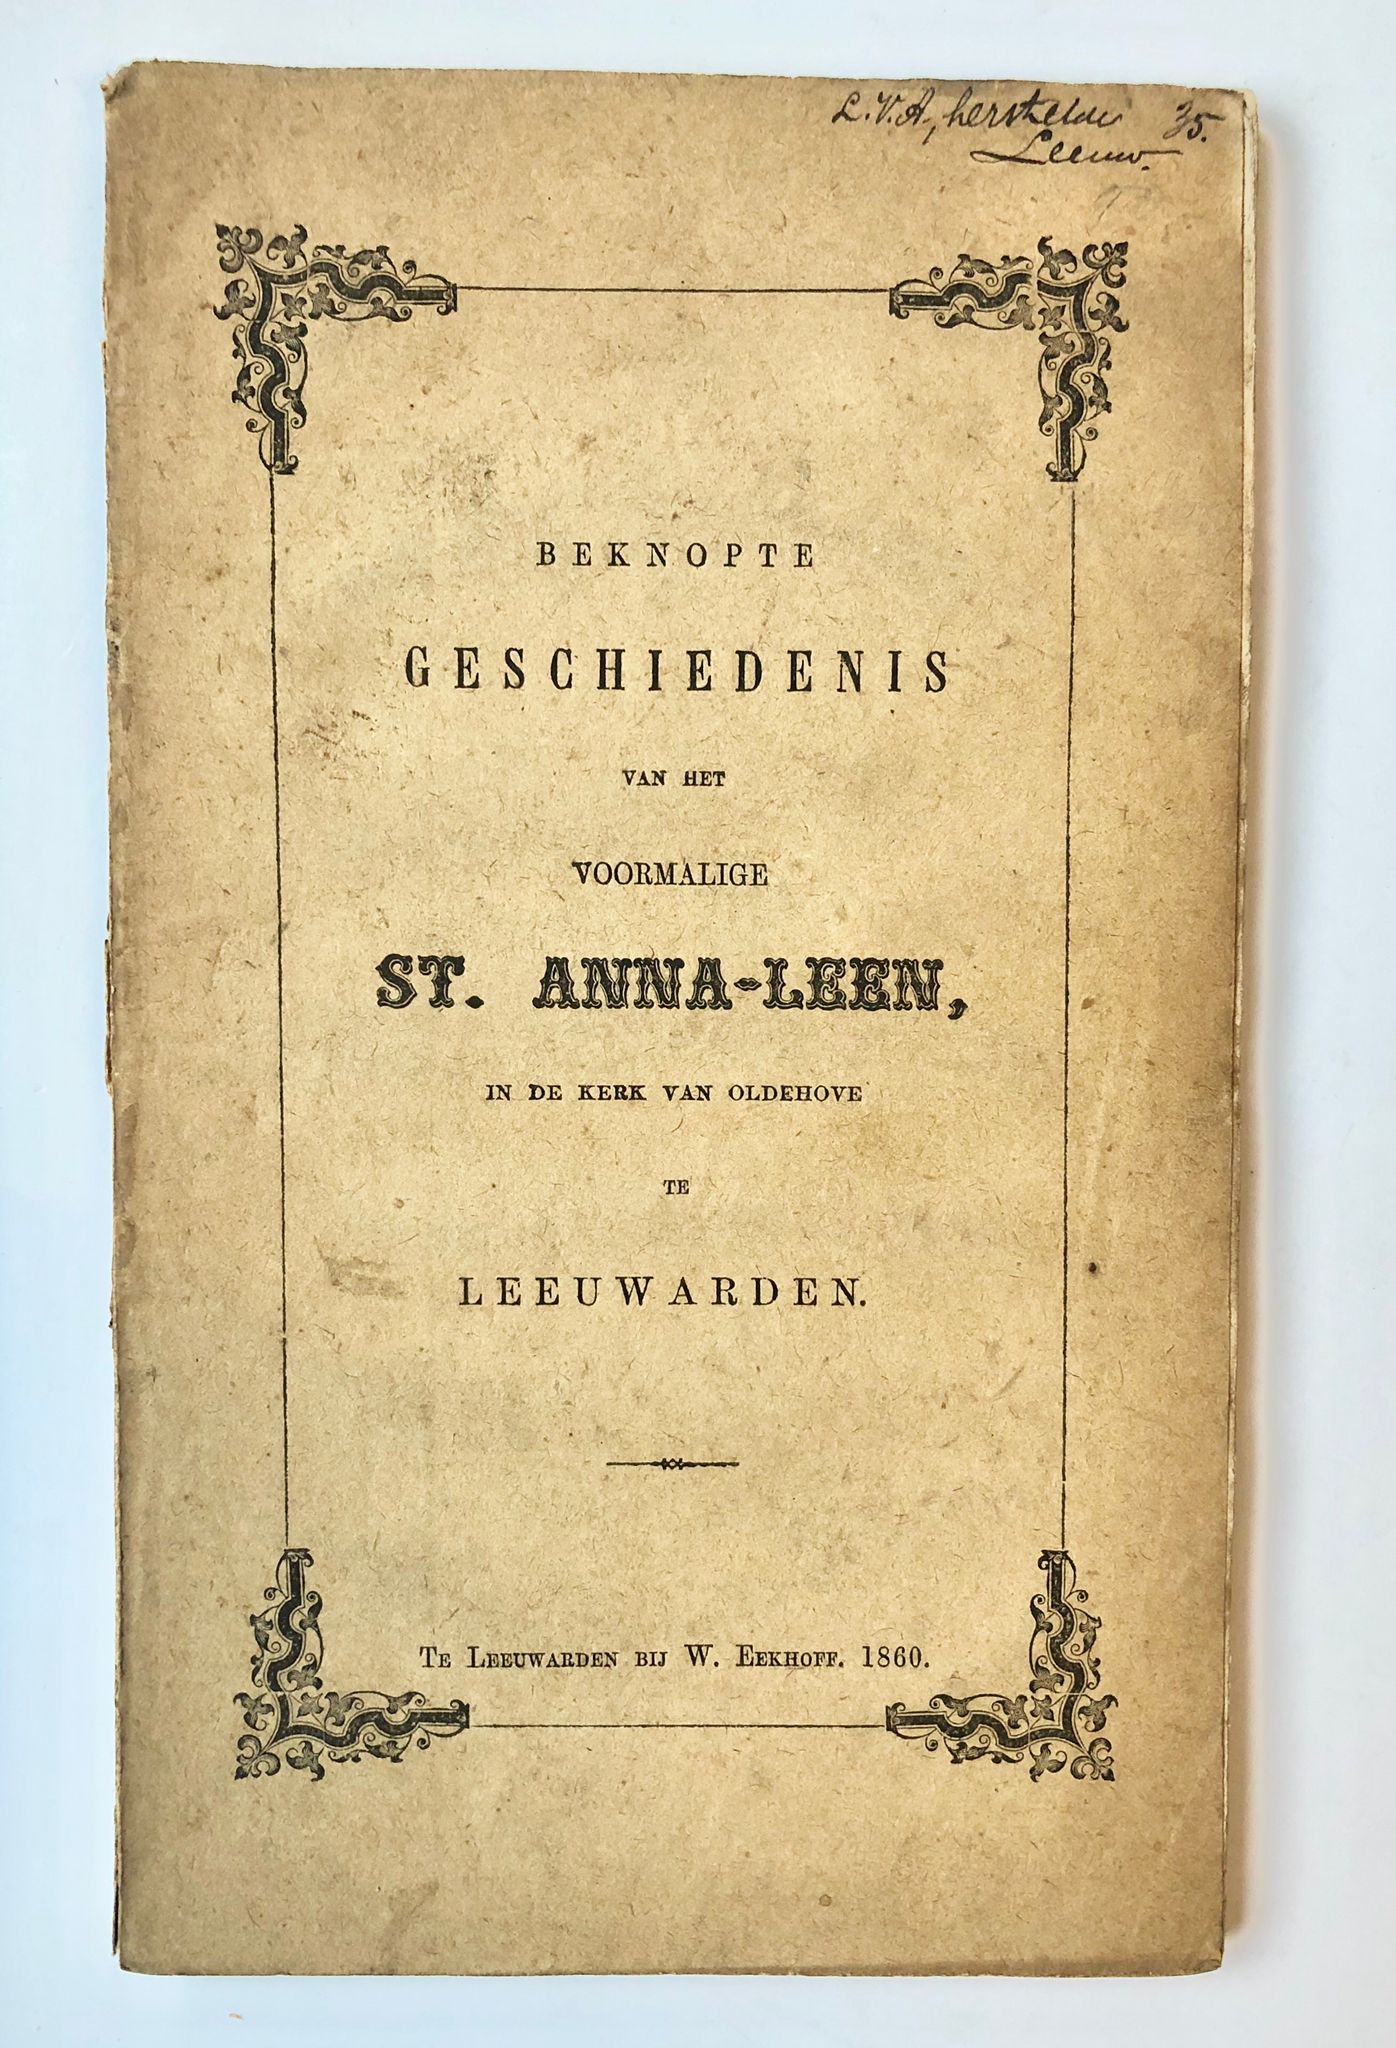 [Friesland, Leeuwarden 1860] Beknopte geschiedenis van het voormalige St. Anna-Leen, in de kerk van Oldehove te Leeuwarden, W. Eekhoff, Te Leeuwarden, 1860, 100 pp.